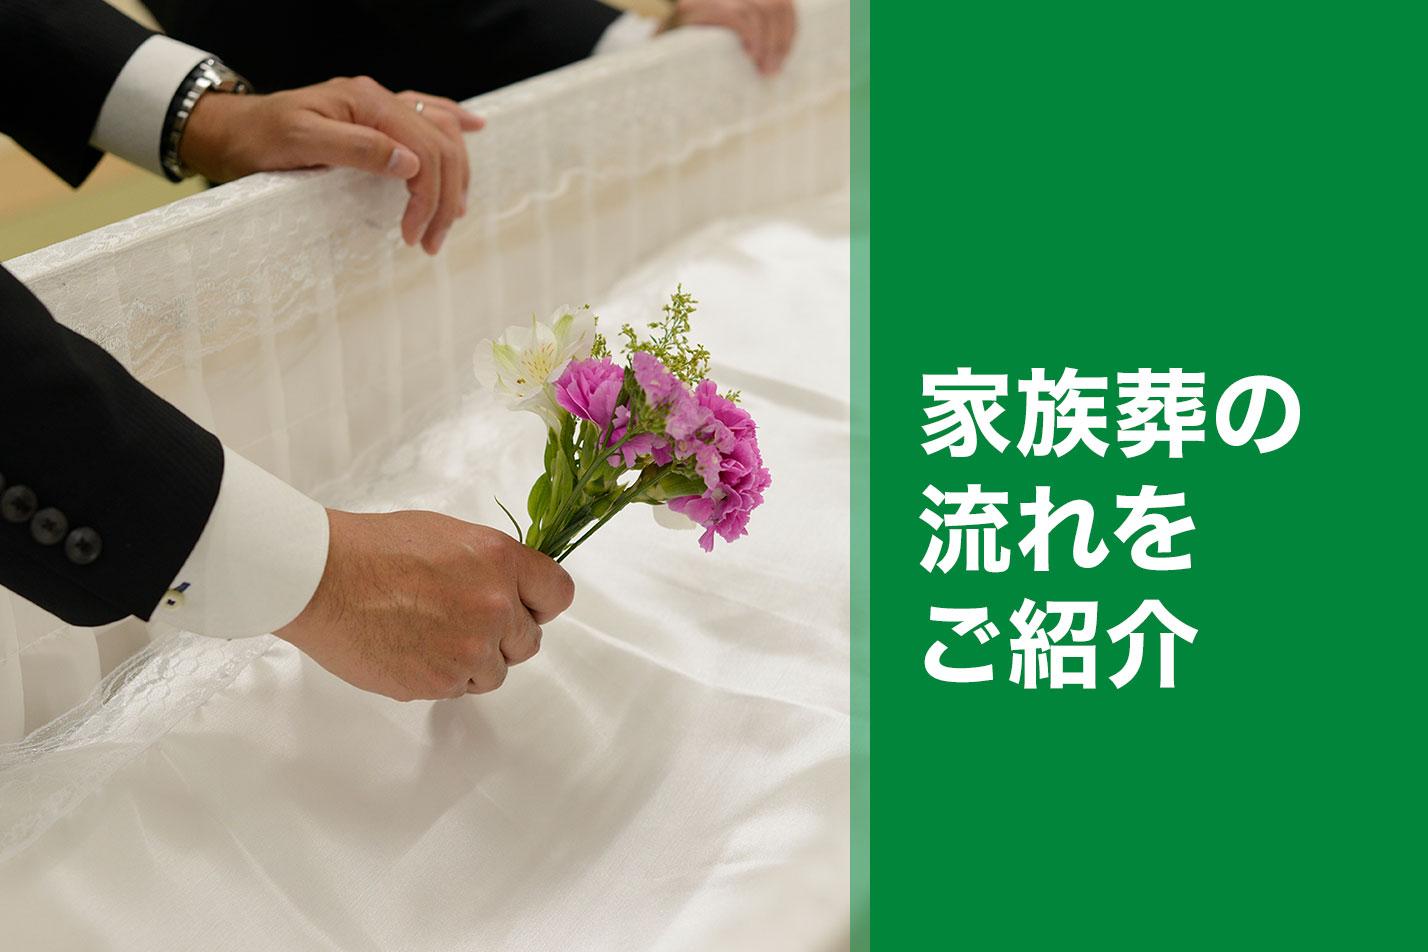  小平市における家族葬の流れとは？のイメージ画像